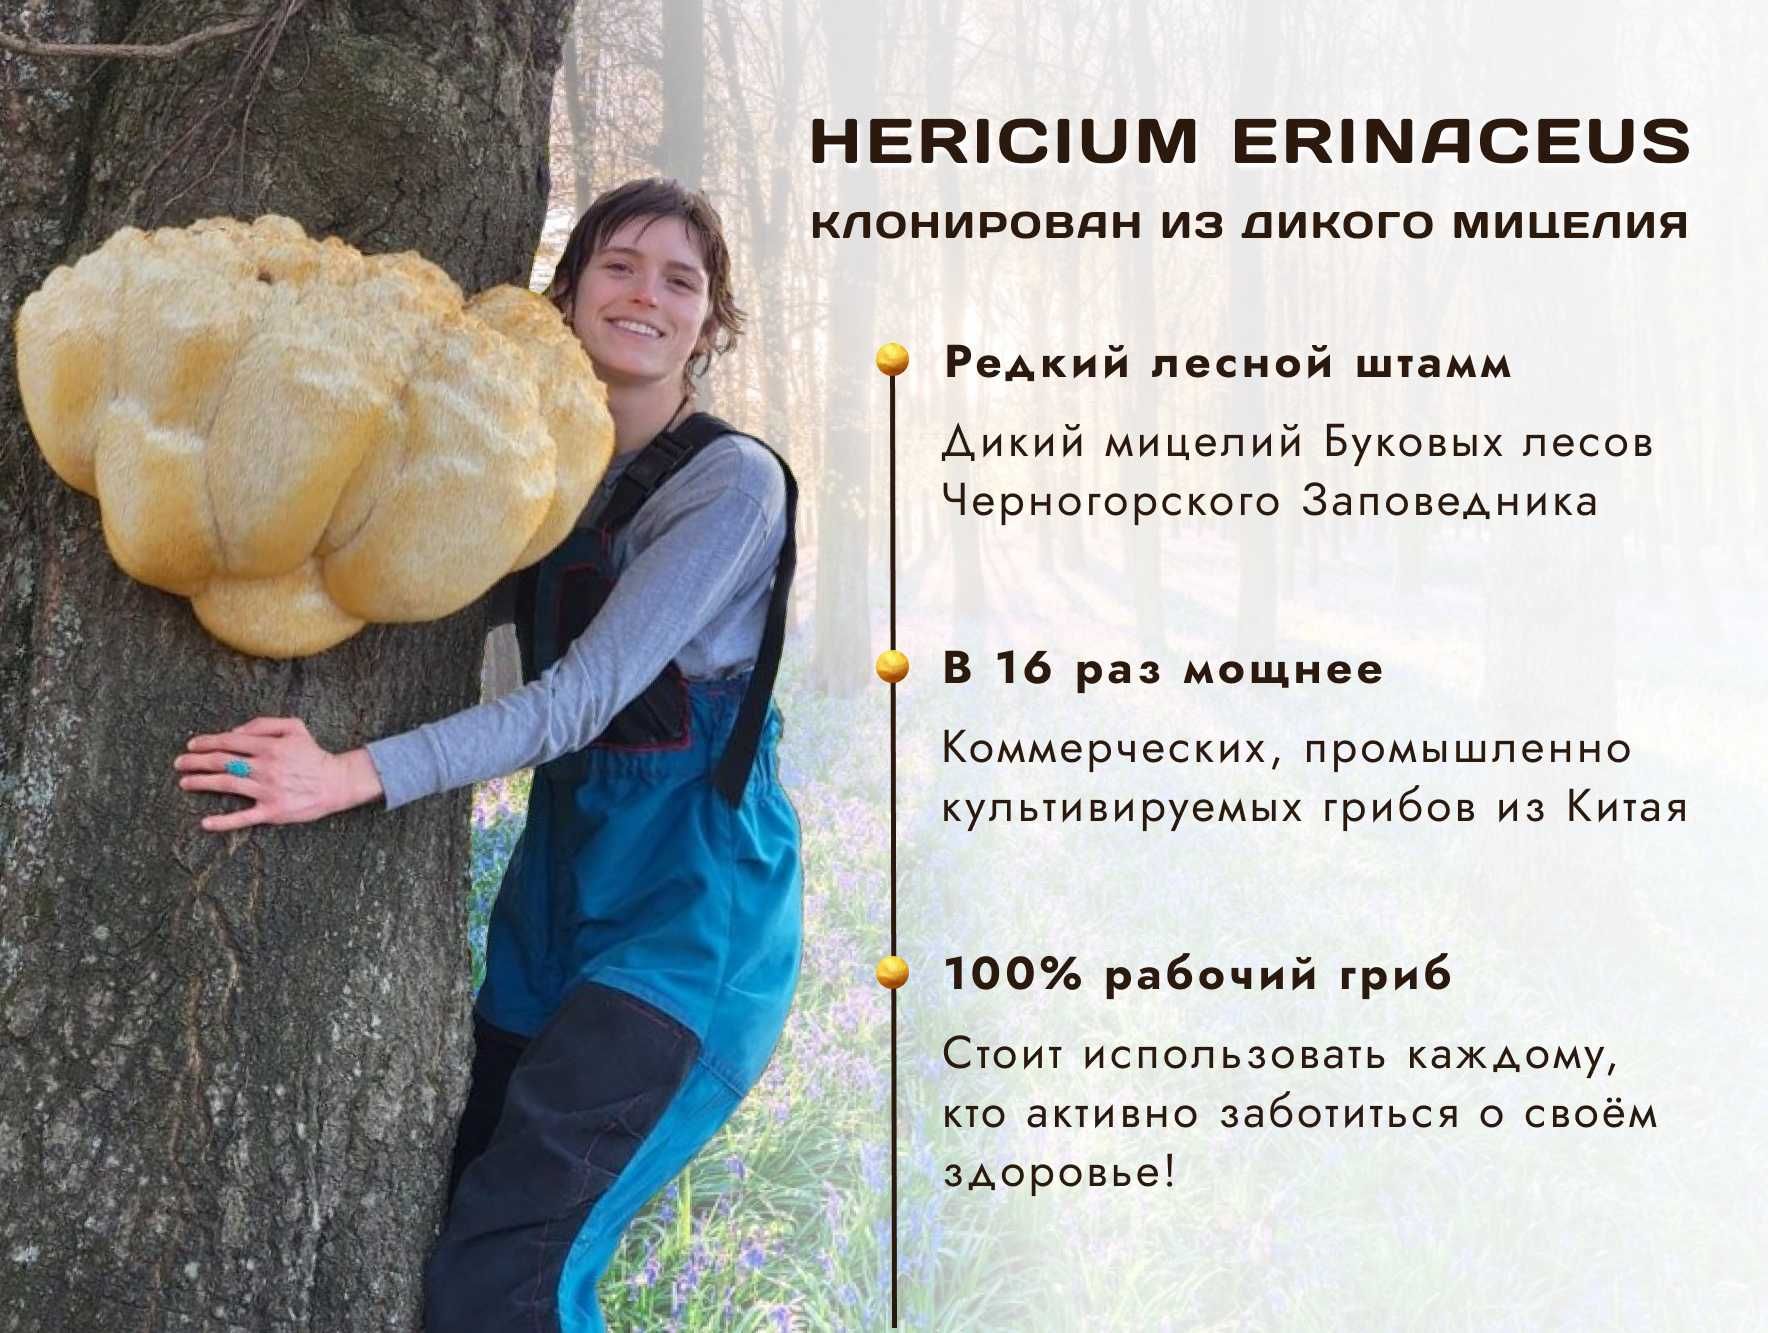 Купите сушенные плоды гриба ЕЖОВИК ГРЕБЕНЧАТЫЙ 》Выращен в Украине